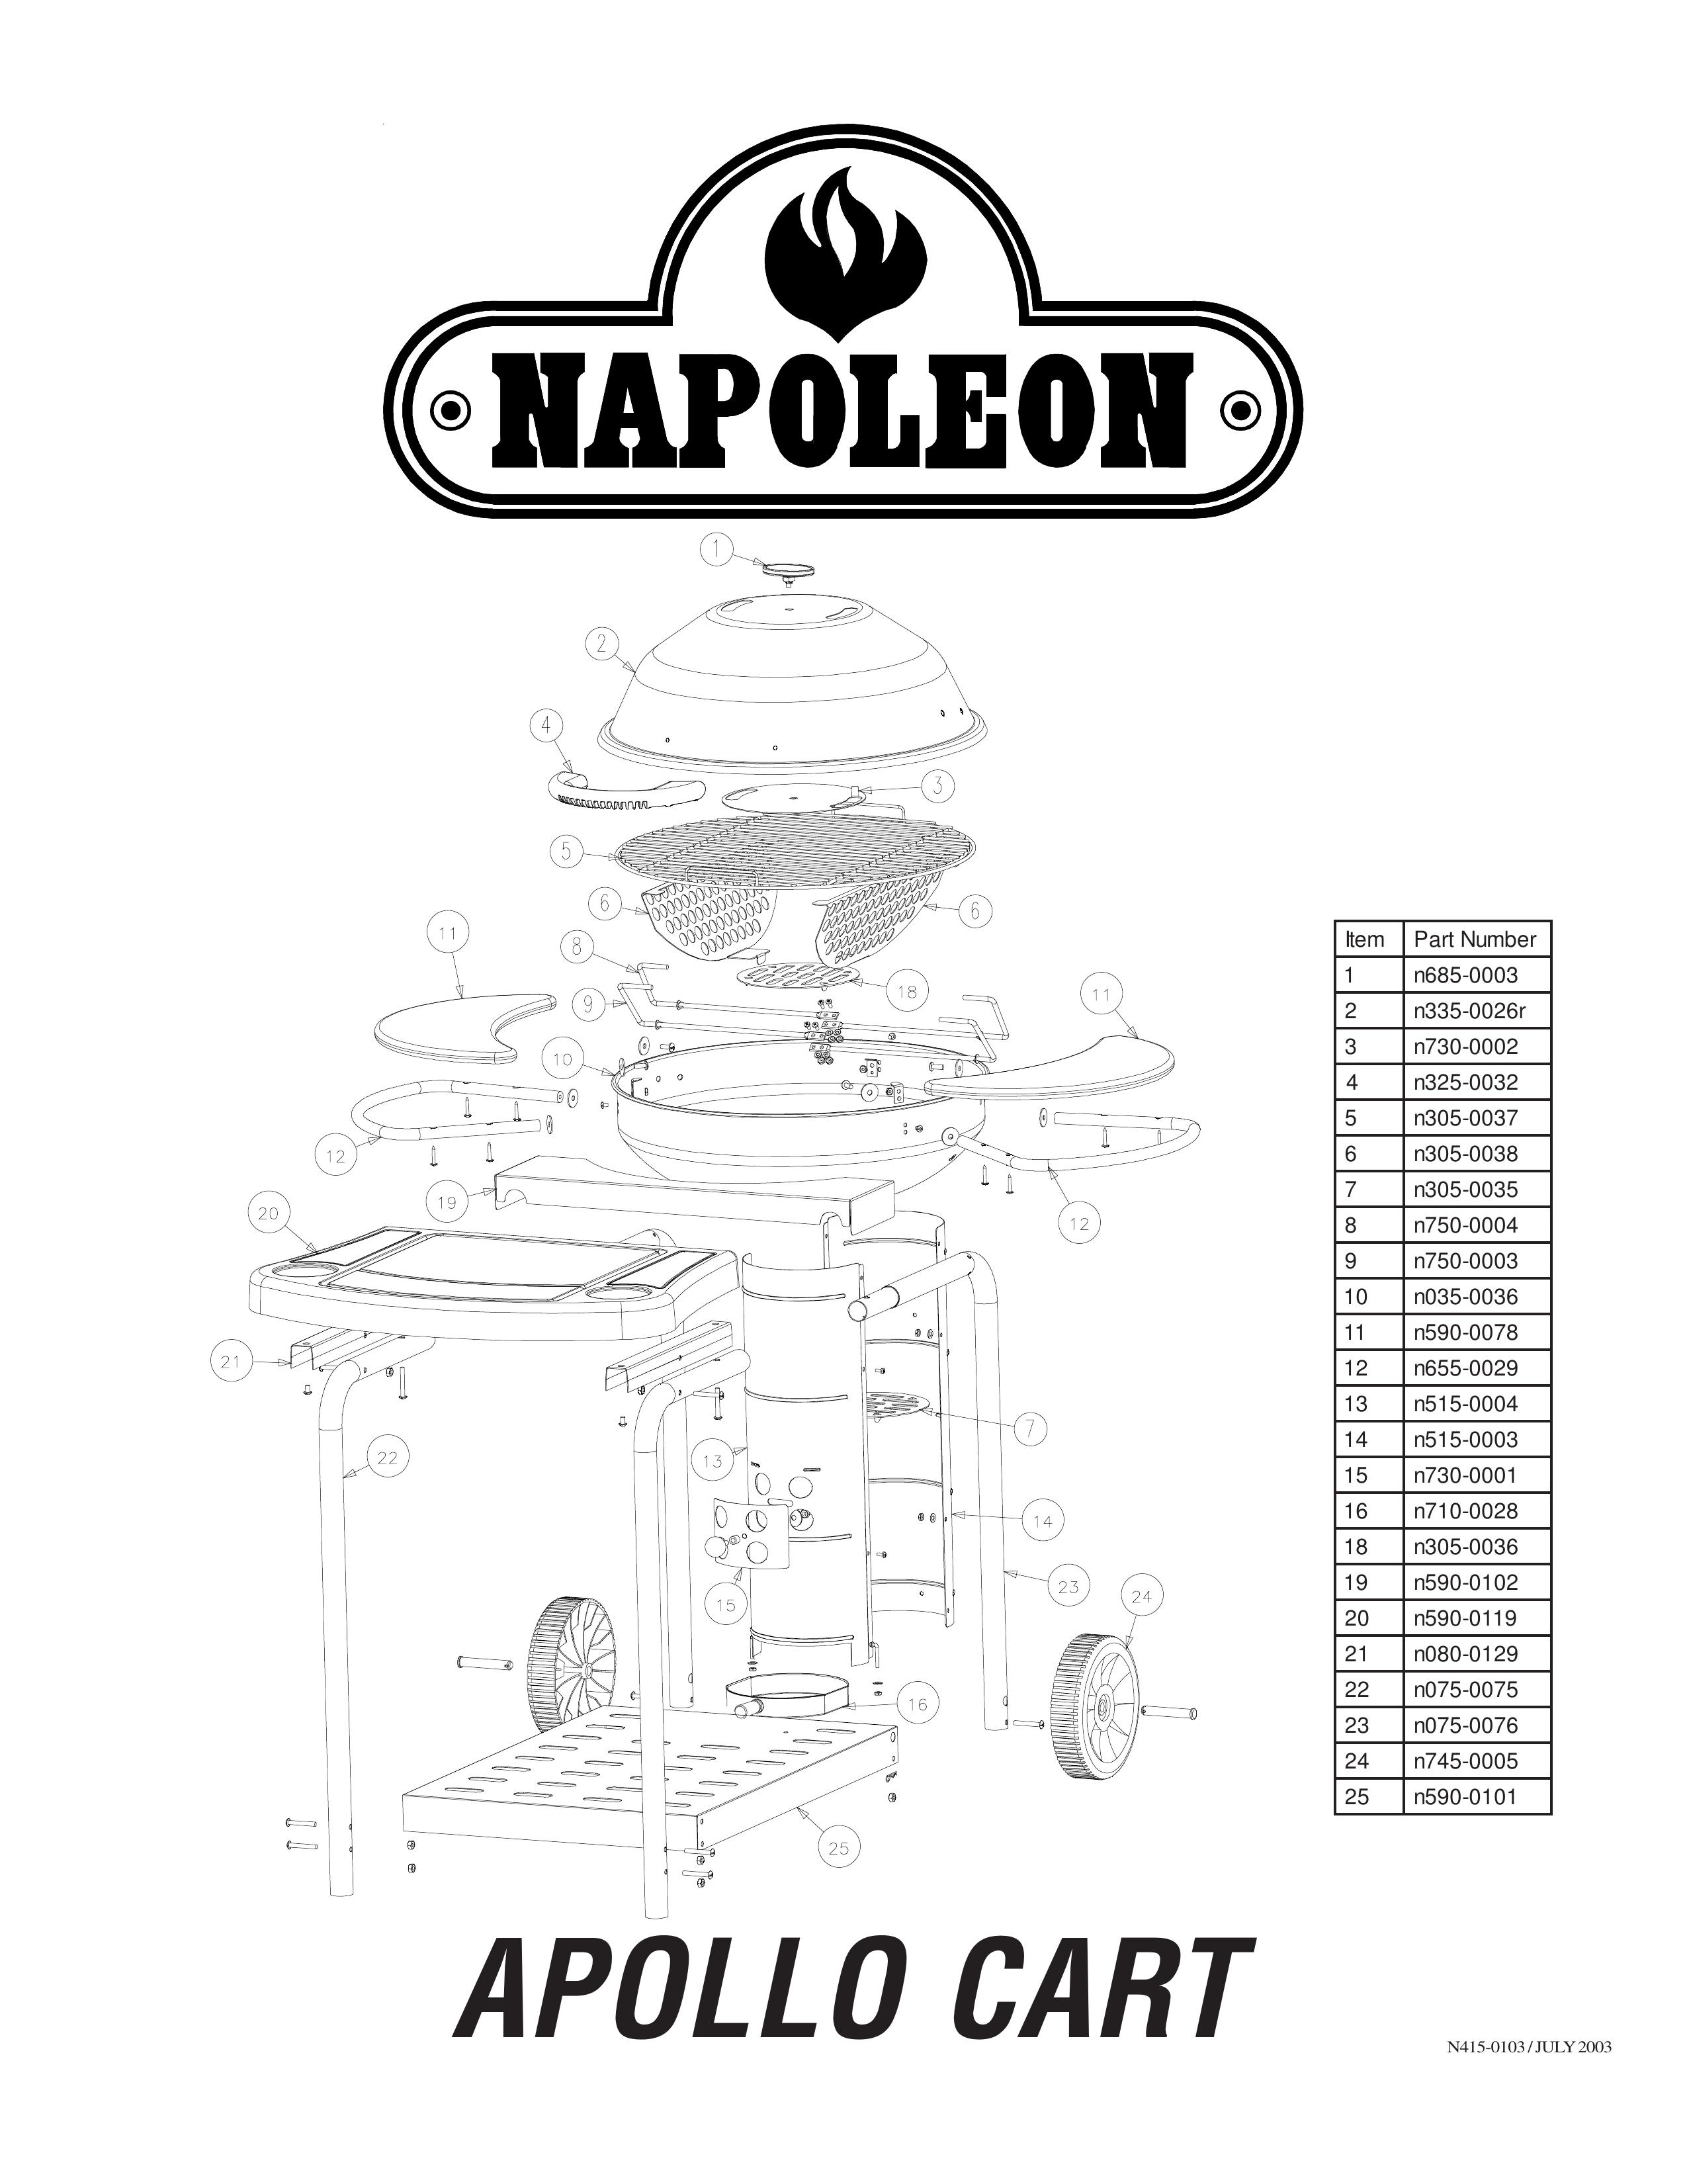 Napoleon Grills N415-0103 Outdoor Cart User Manual